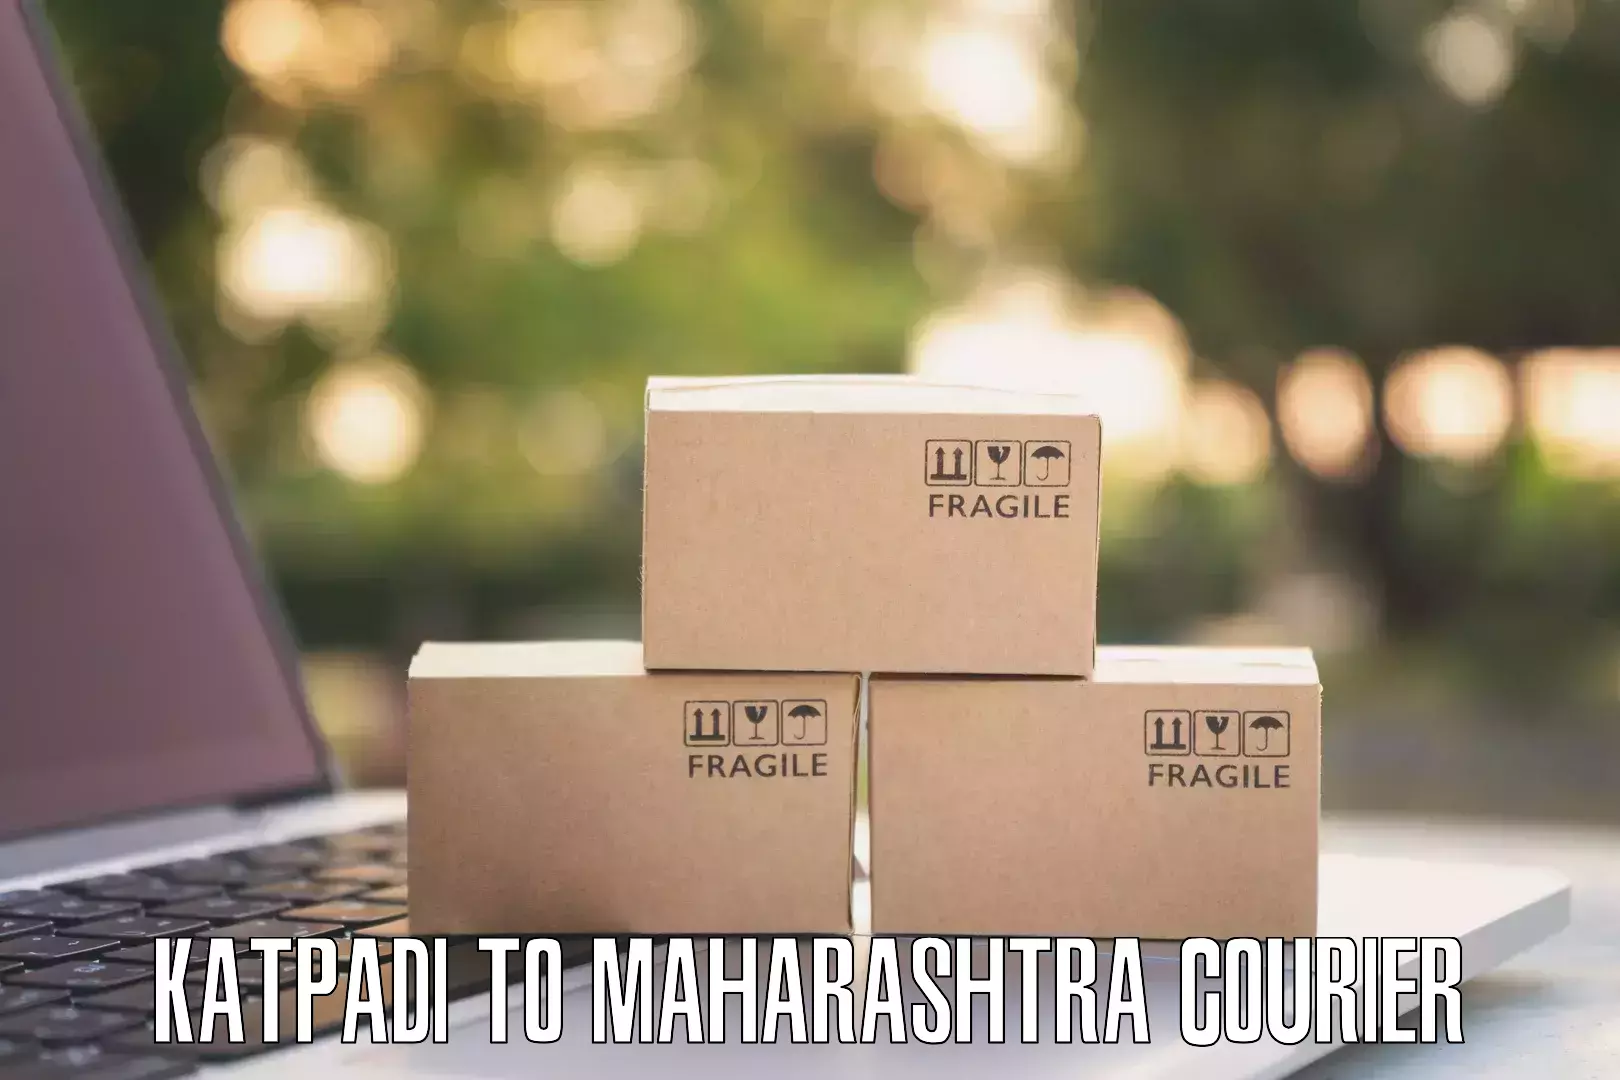 Courier app Katpadi to Maharashtra